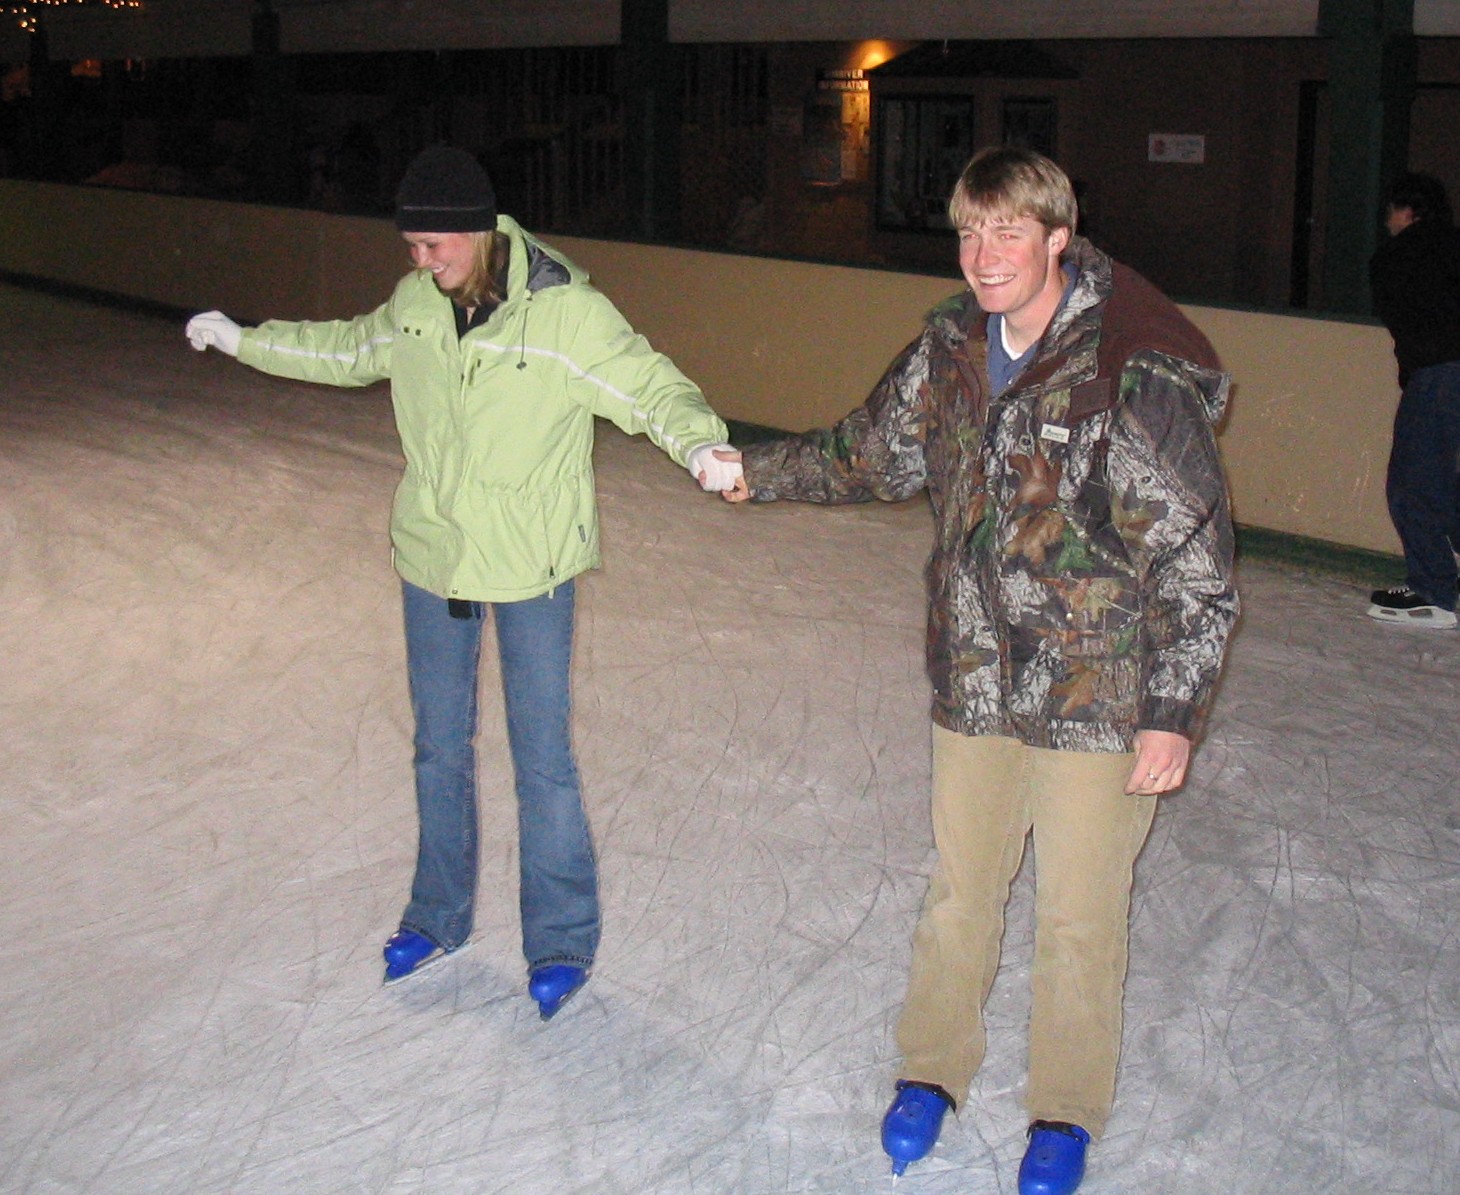 Ice skating in Sunriver